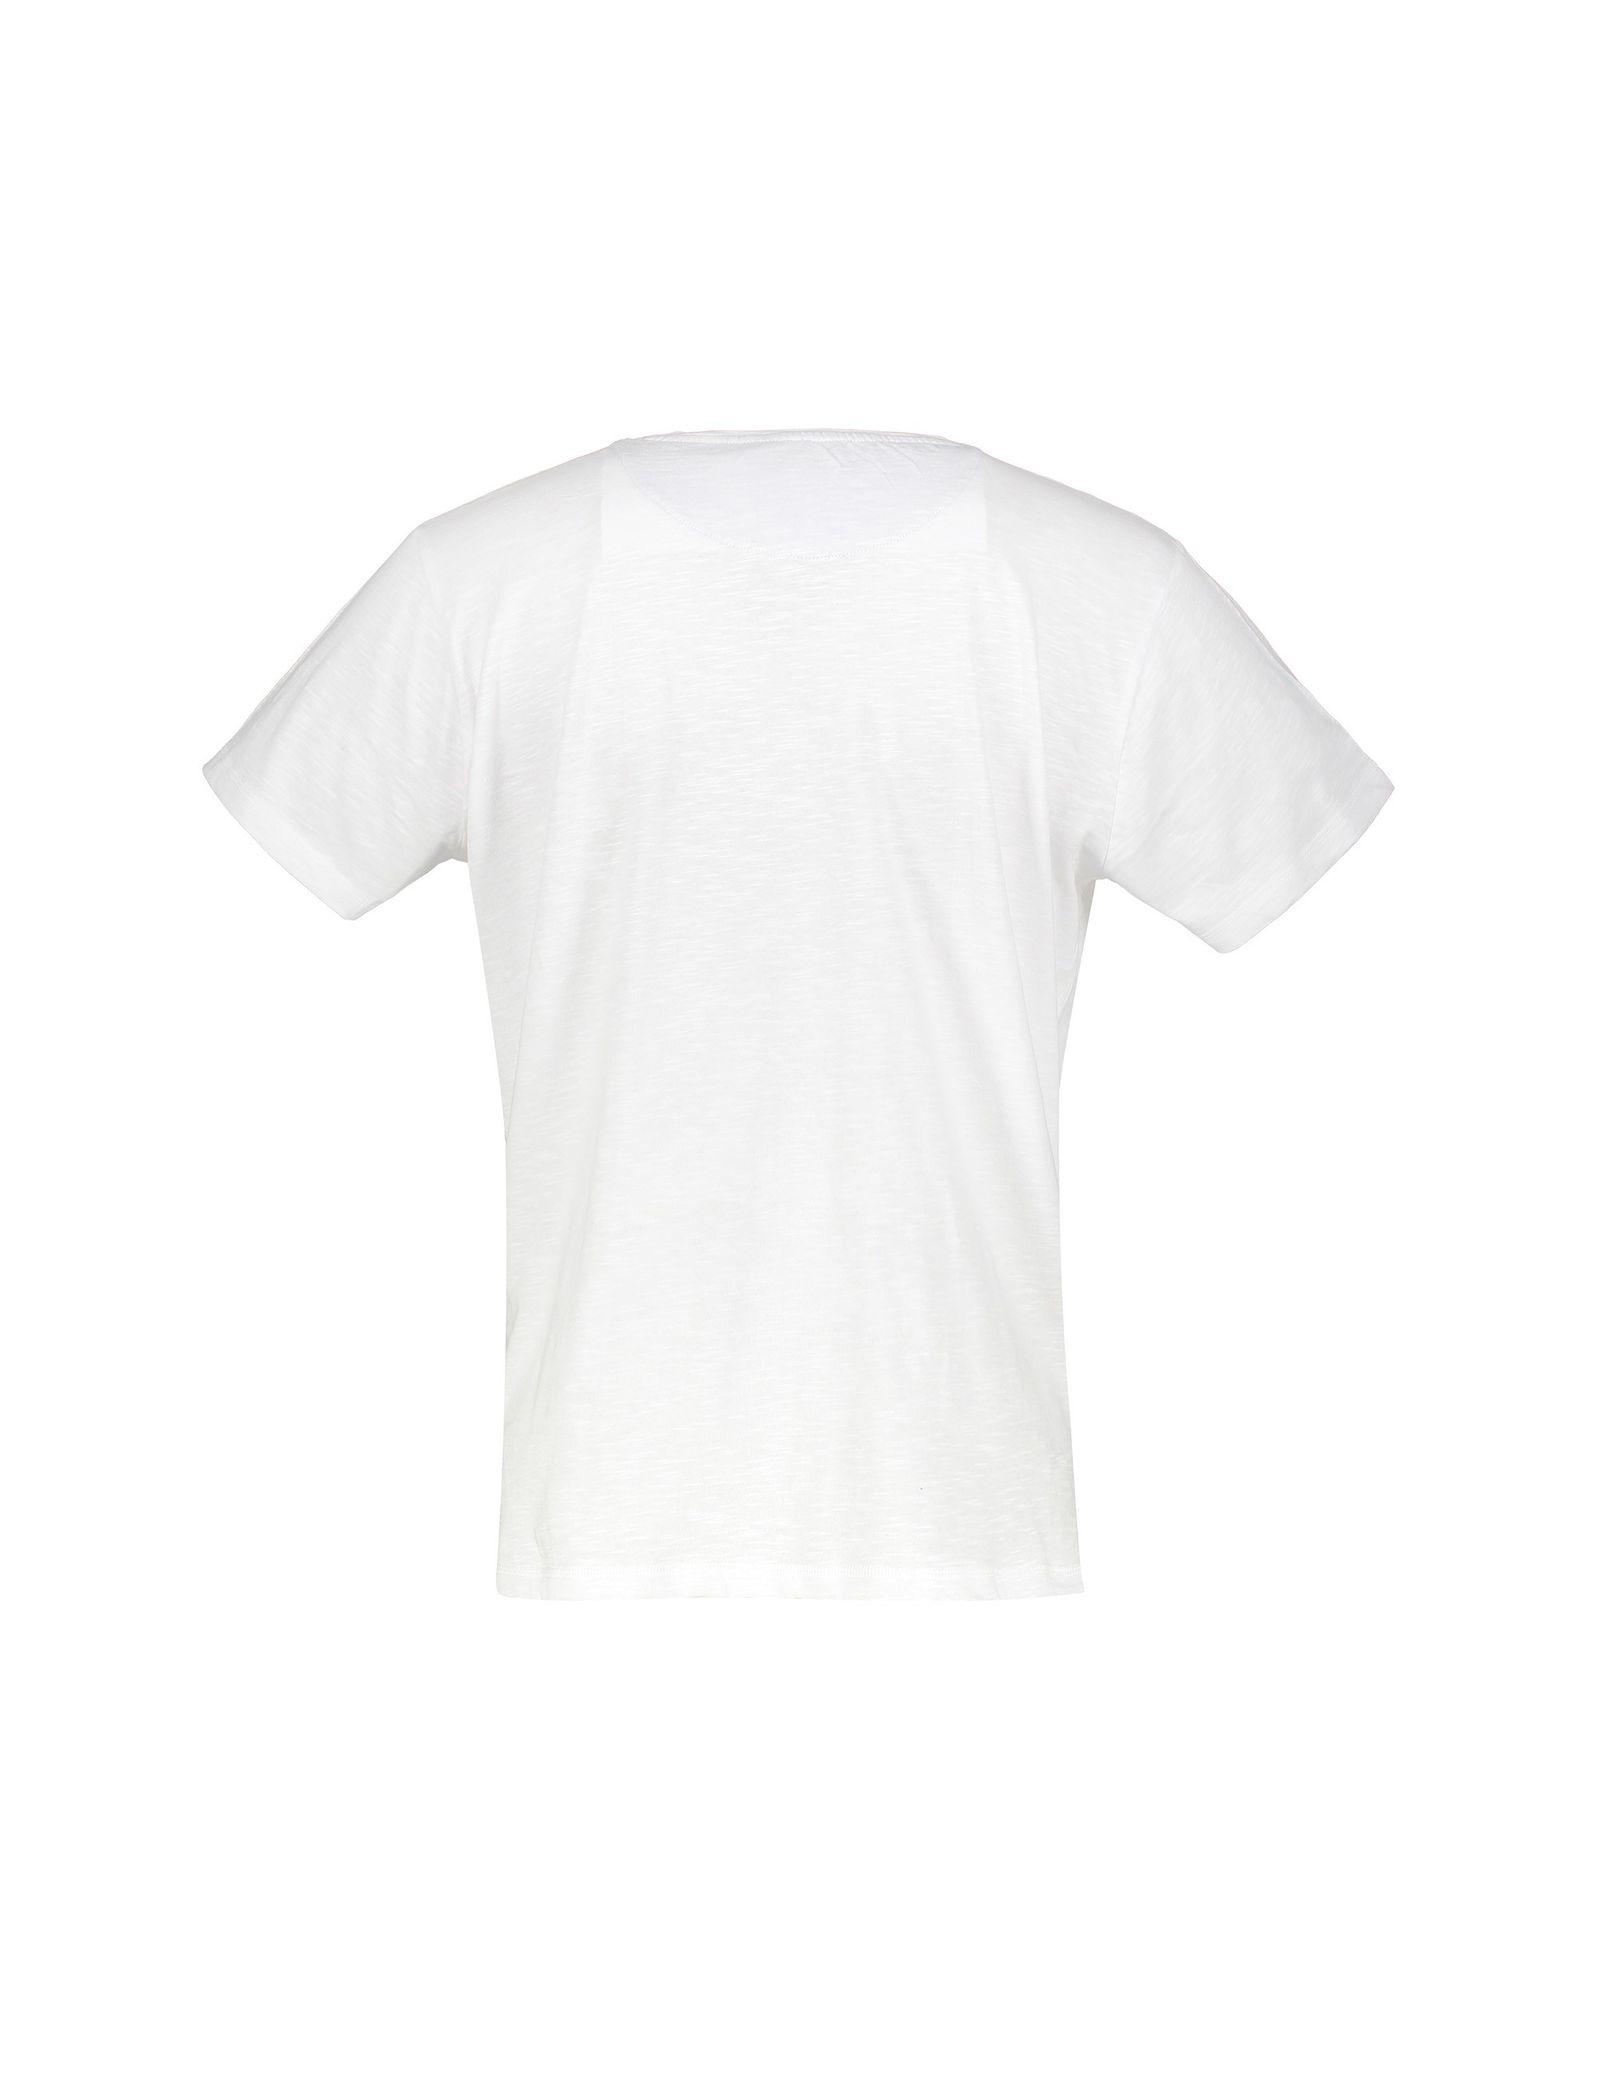 تی شرت و شلوار راحتی نخی مردانه - مانگو - سرمه اي - 5